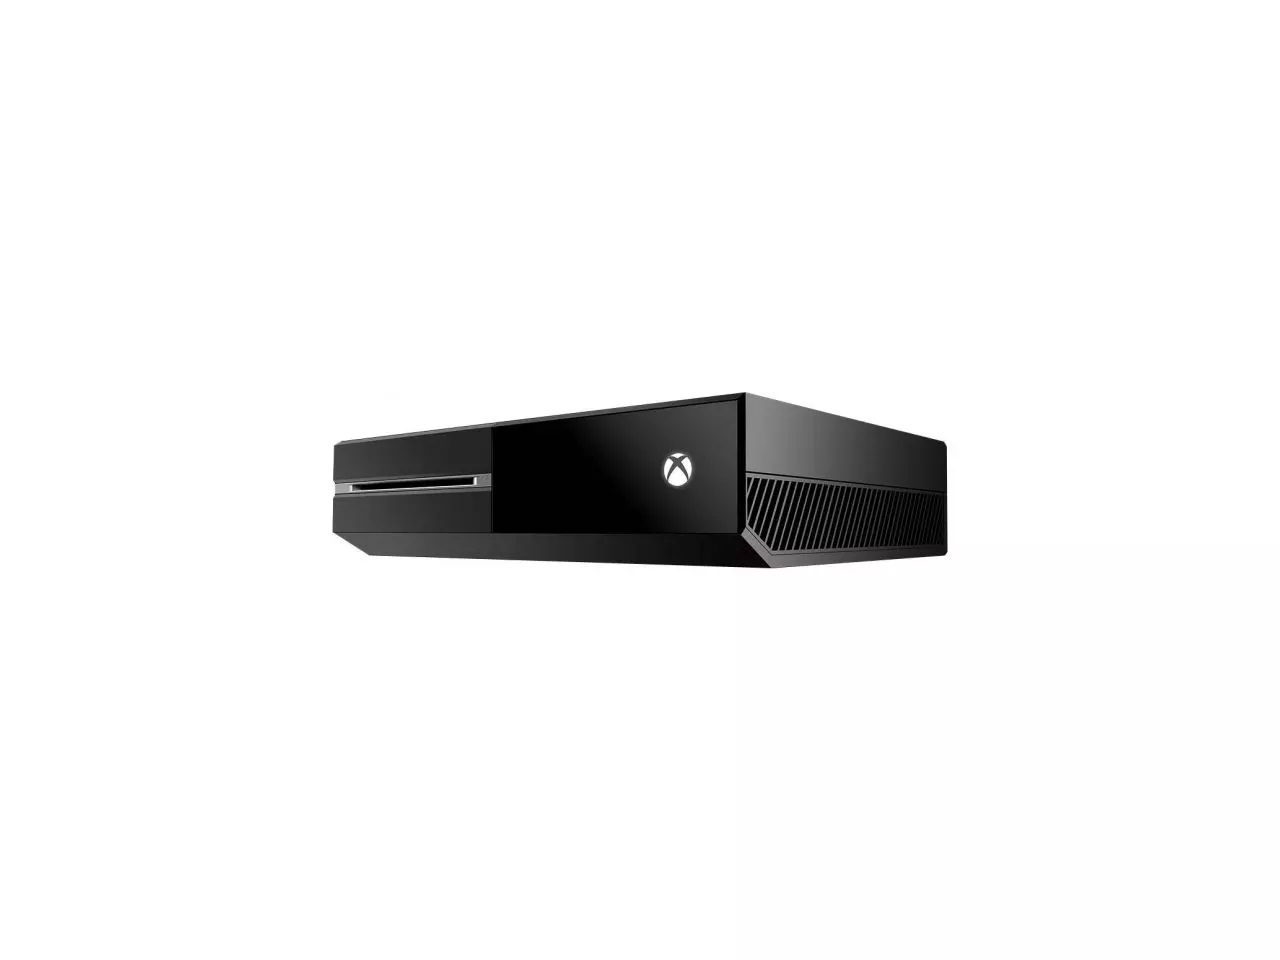 Microsoft apresenta Xbox One e foca em interação com TV